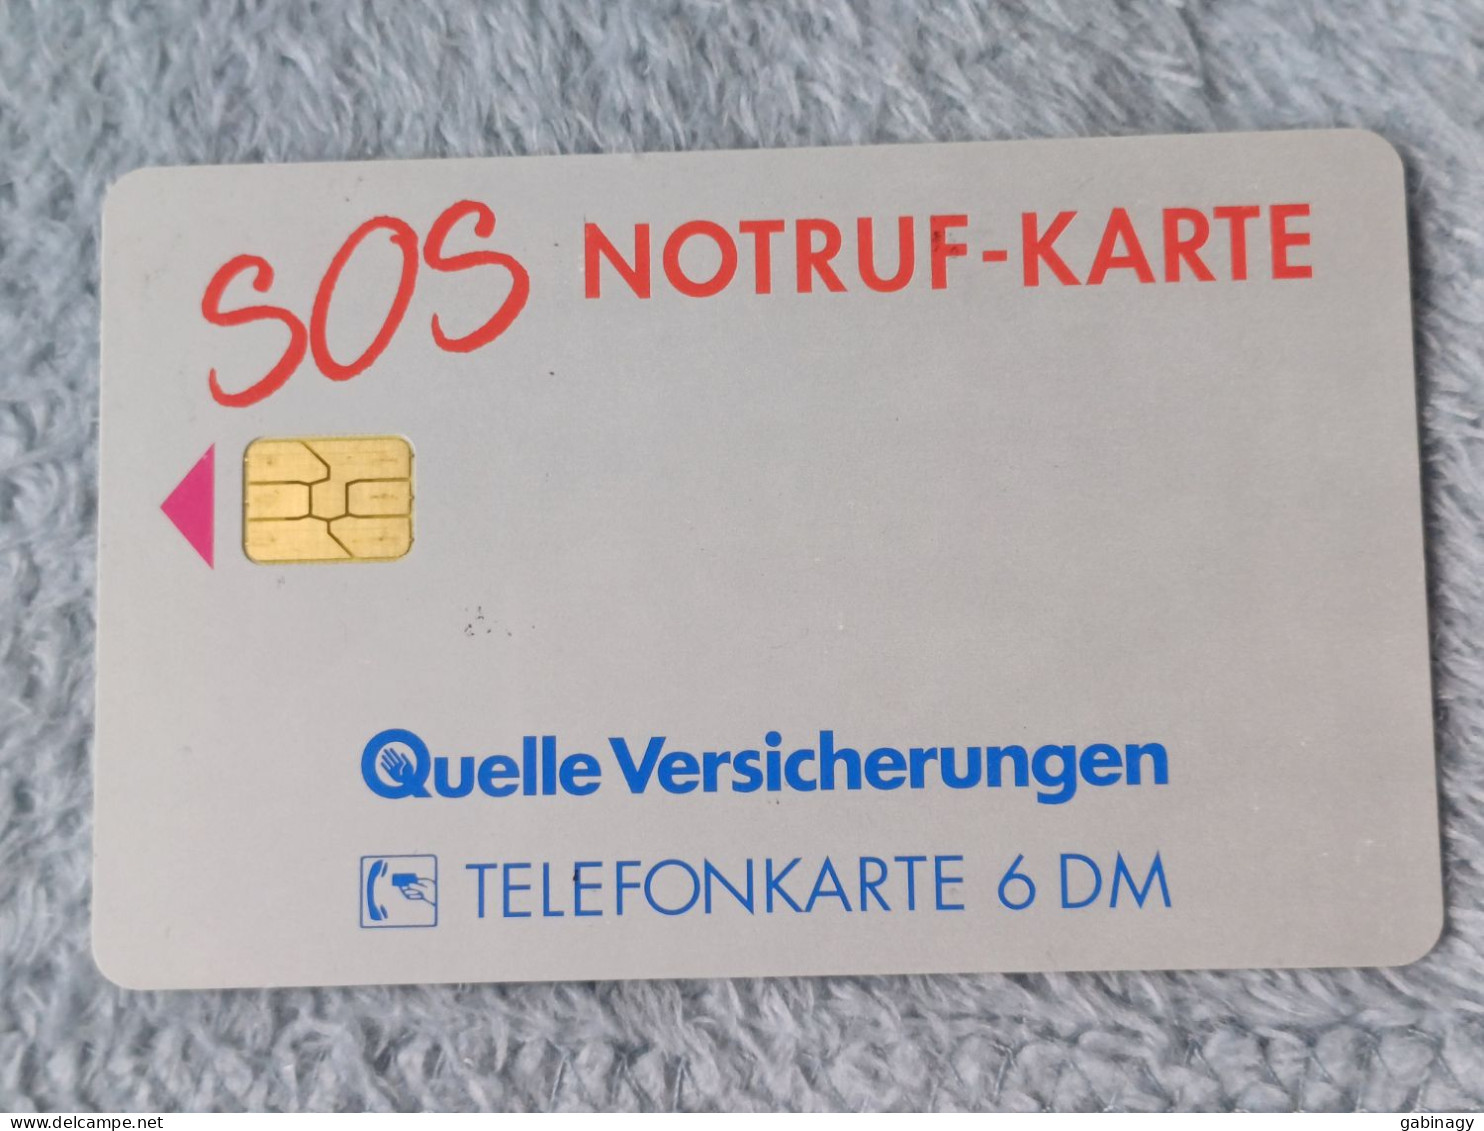 GERMANY-1157 - O 0524 - Quelle Versicherungen 8 – SOS-Notruf-Karte 3 - 3.000ex. - O-Series: Kundenserie Vom Sammlerservice Ausgeschlossen